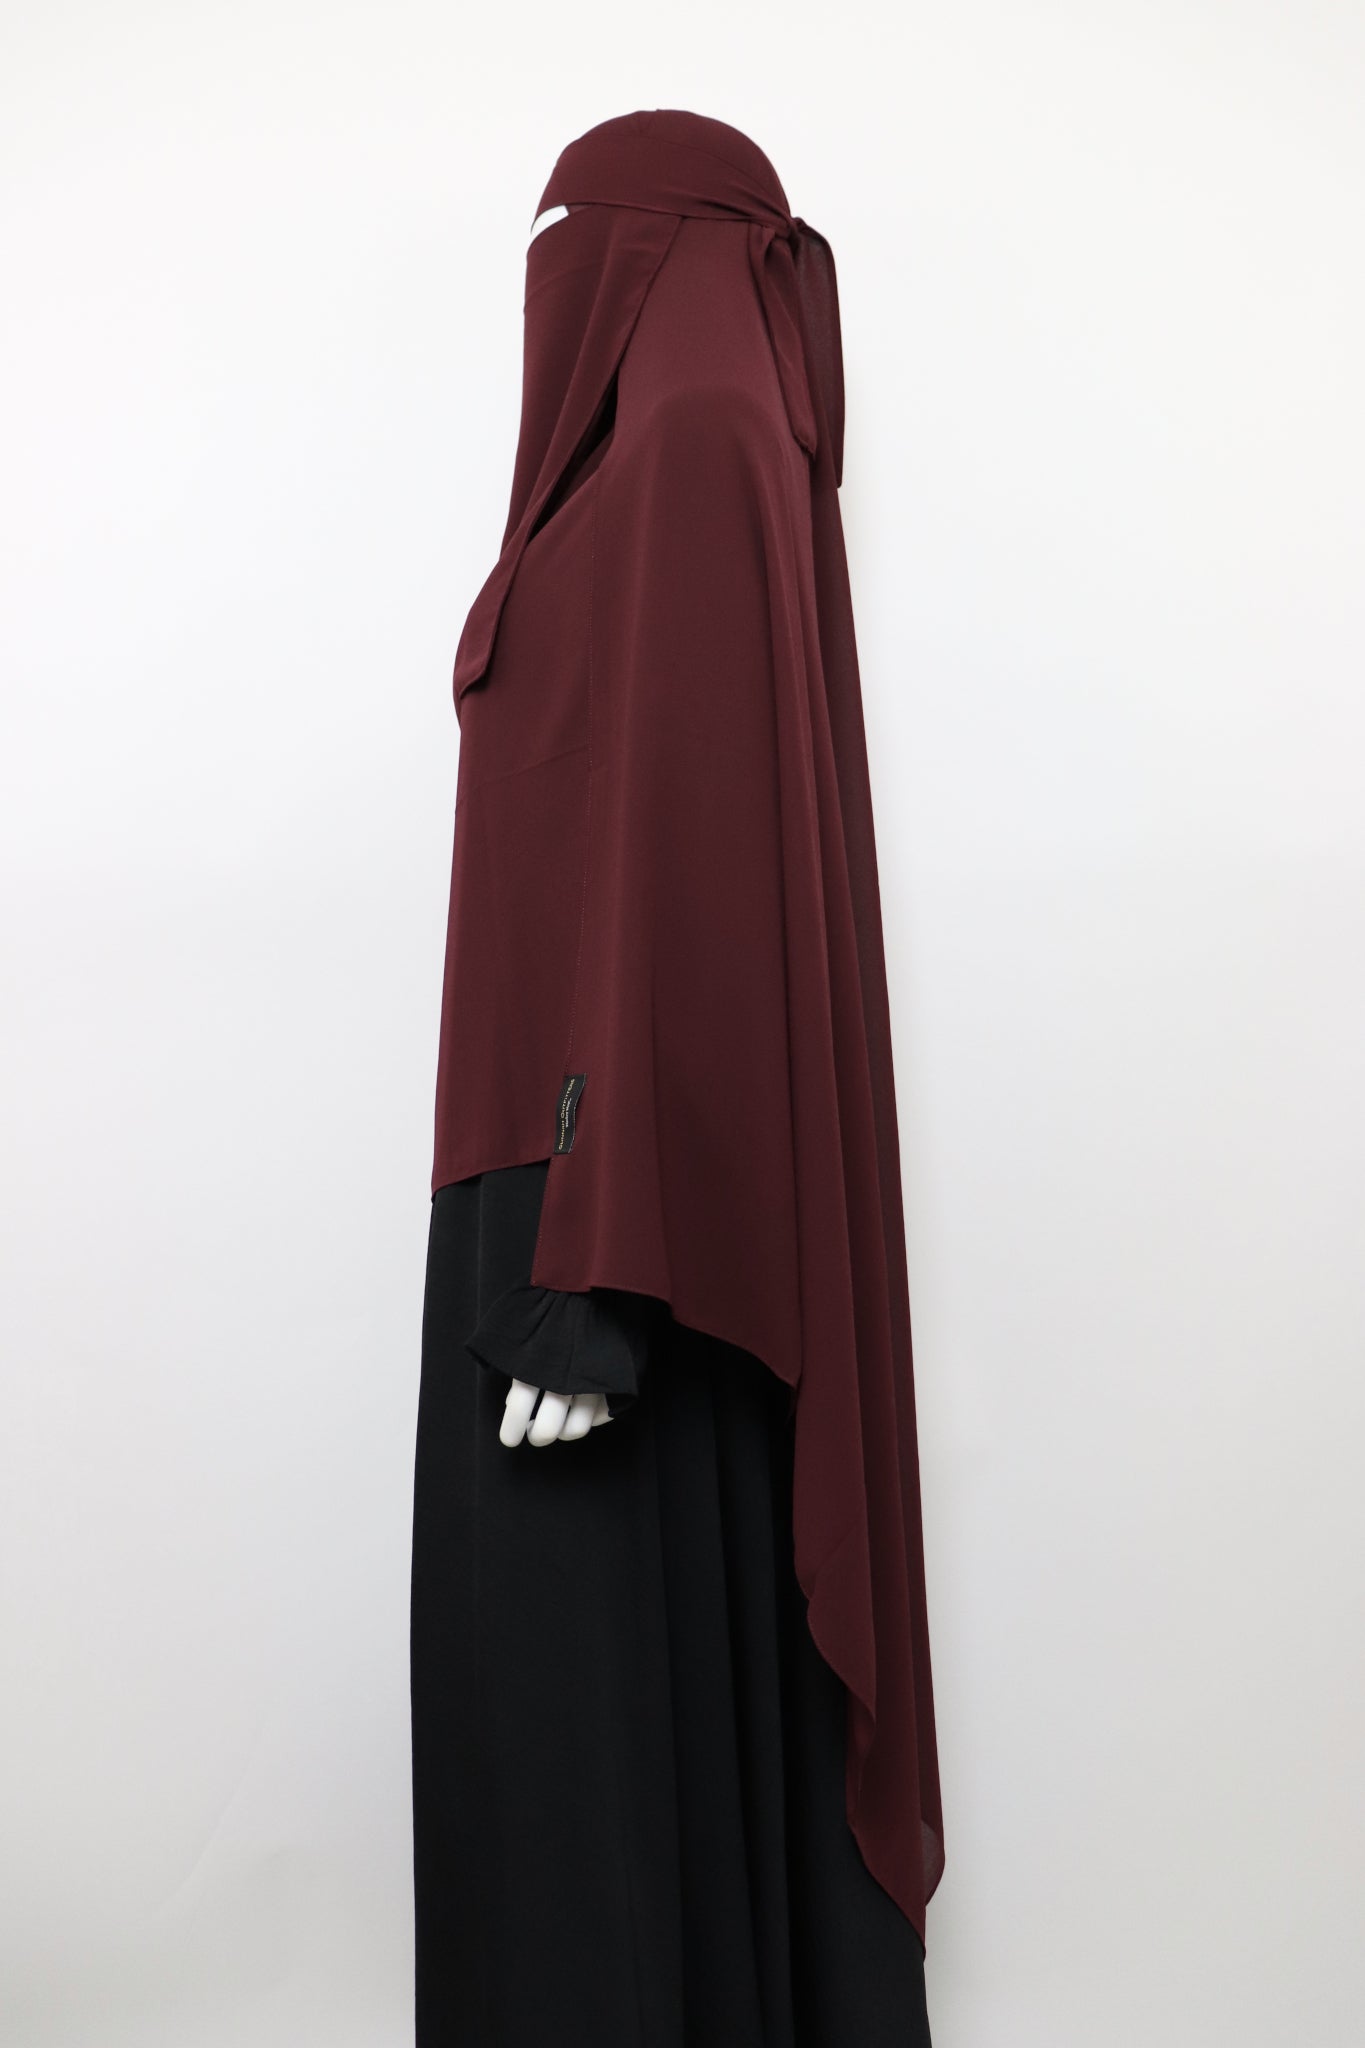 XL Premium Chiffon Hijab and Niqab Set - Burgundy